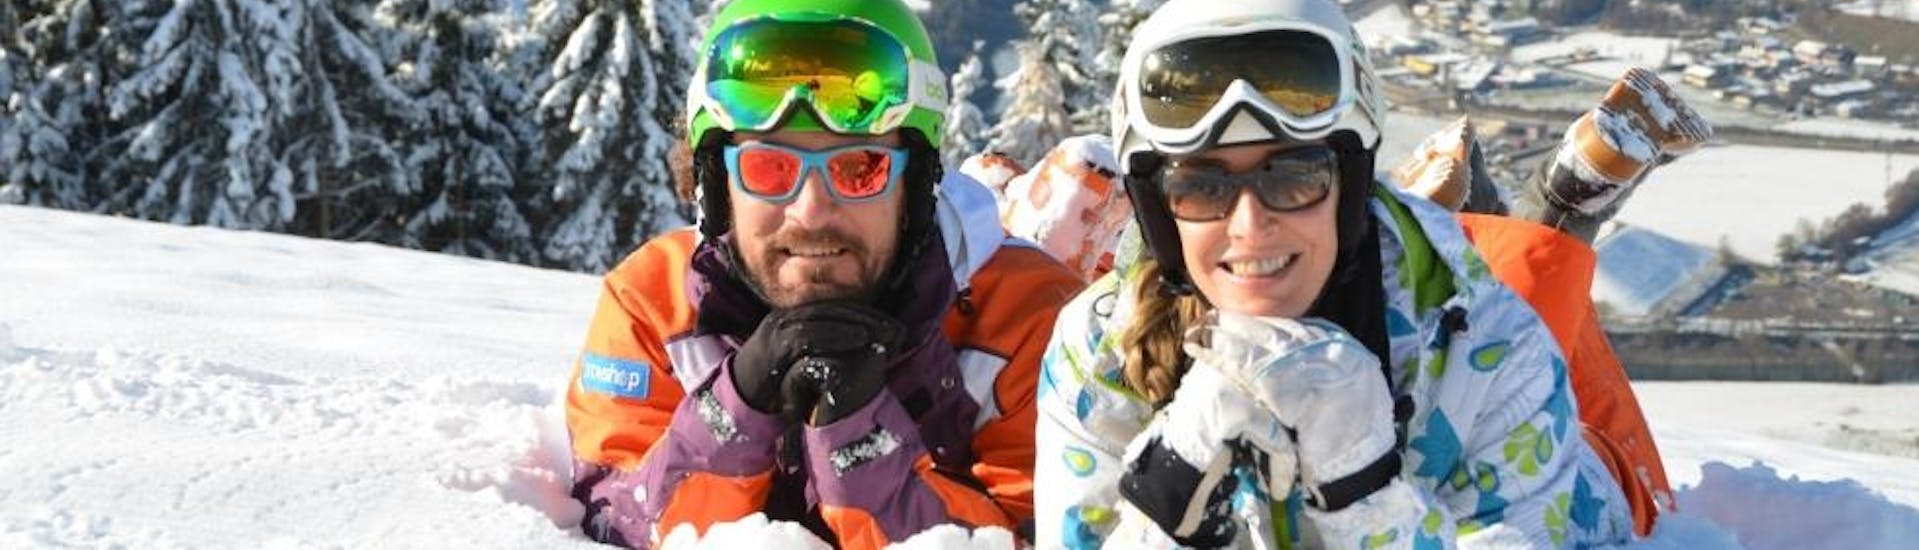 Lezioni di sci per adulti a partire da 15 anni per tutti i livelli con Skischule Toni Gruber.